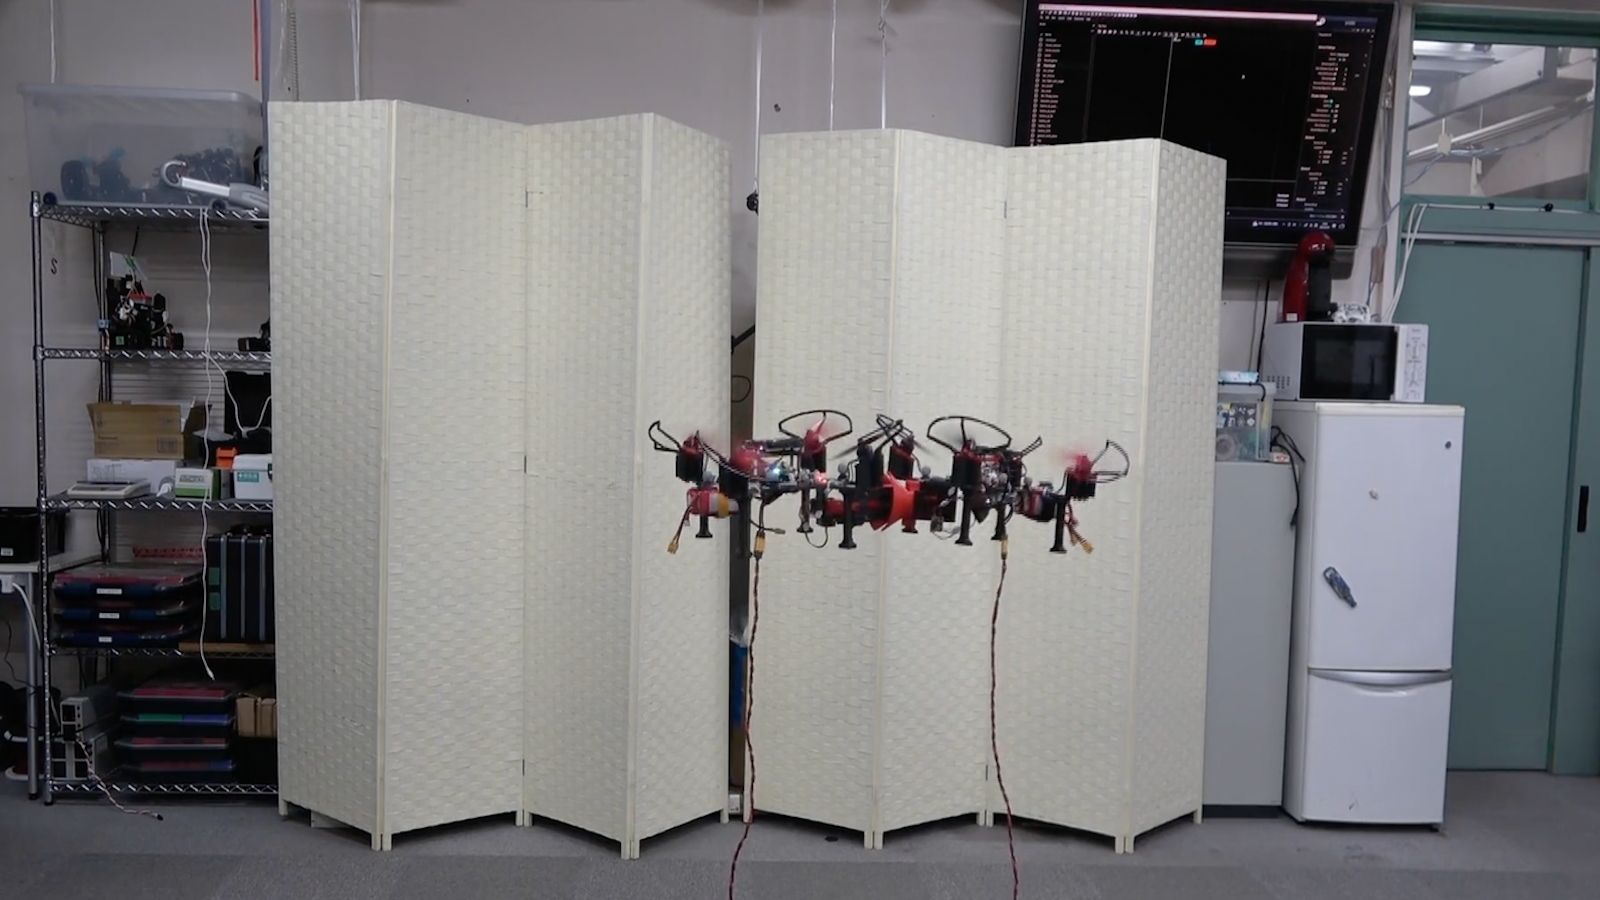 Les drones s’assemblent et leur système de contrôle s’unifie pour qu’ils ne forment qu’un seul appareil. © Université de Tokyo